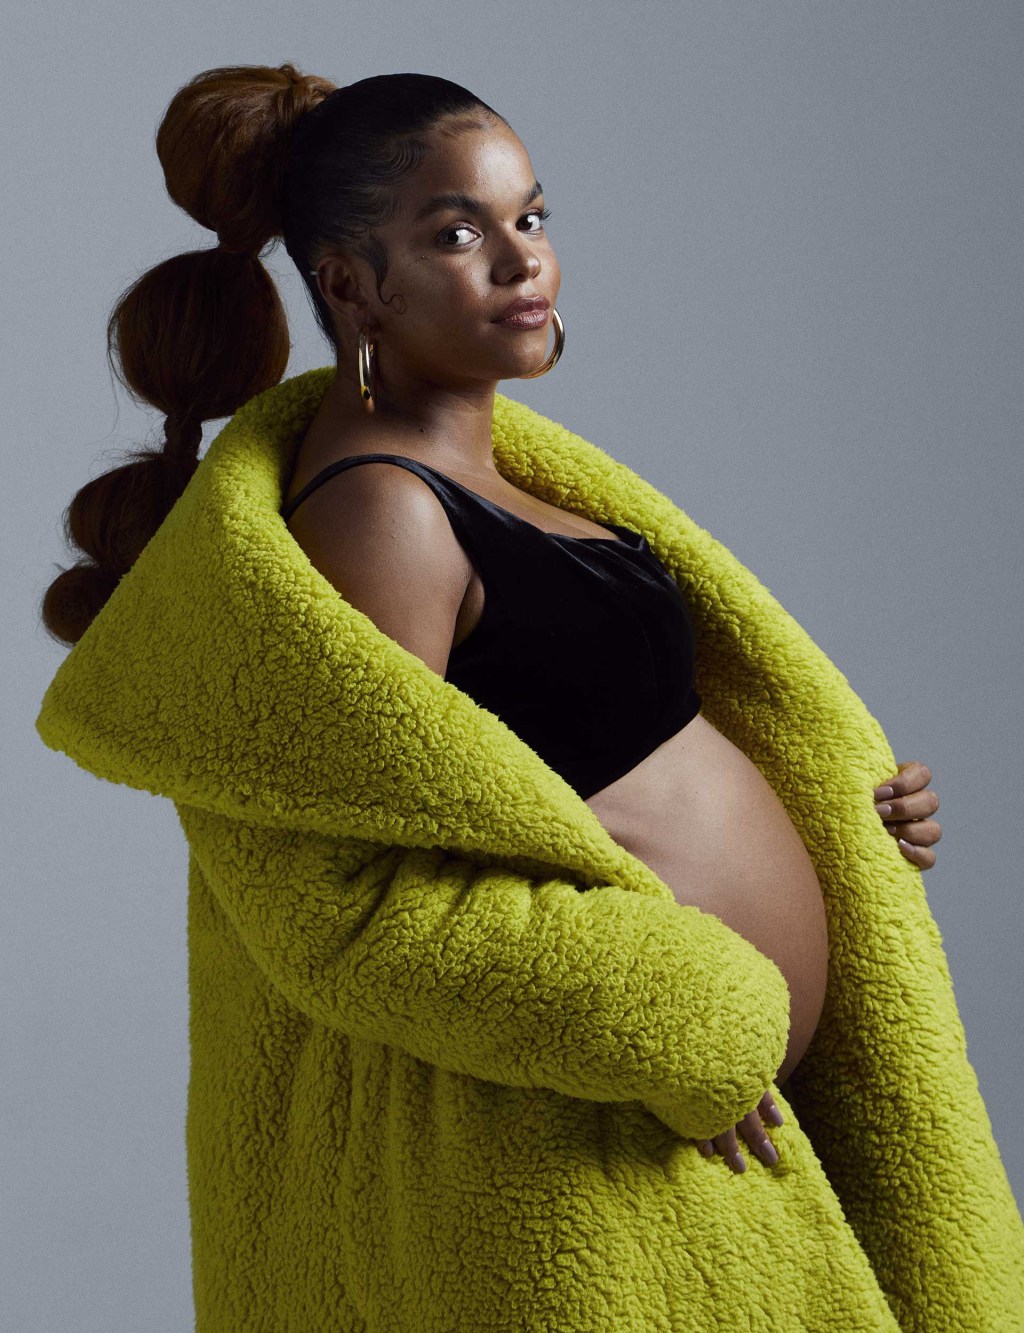 mulher grávida olhando com expressão séria para a câmera. Ela usa um casaco aberto e um top, deixando a barriga à mostra